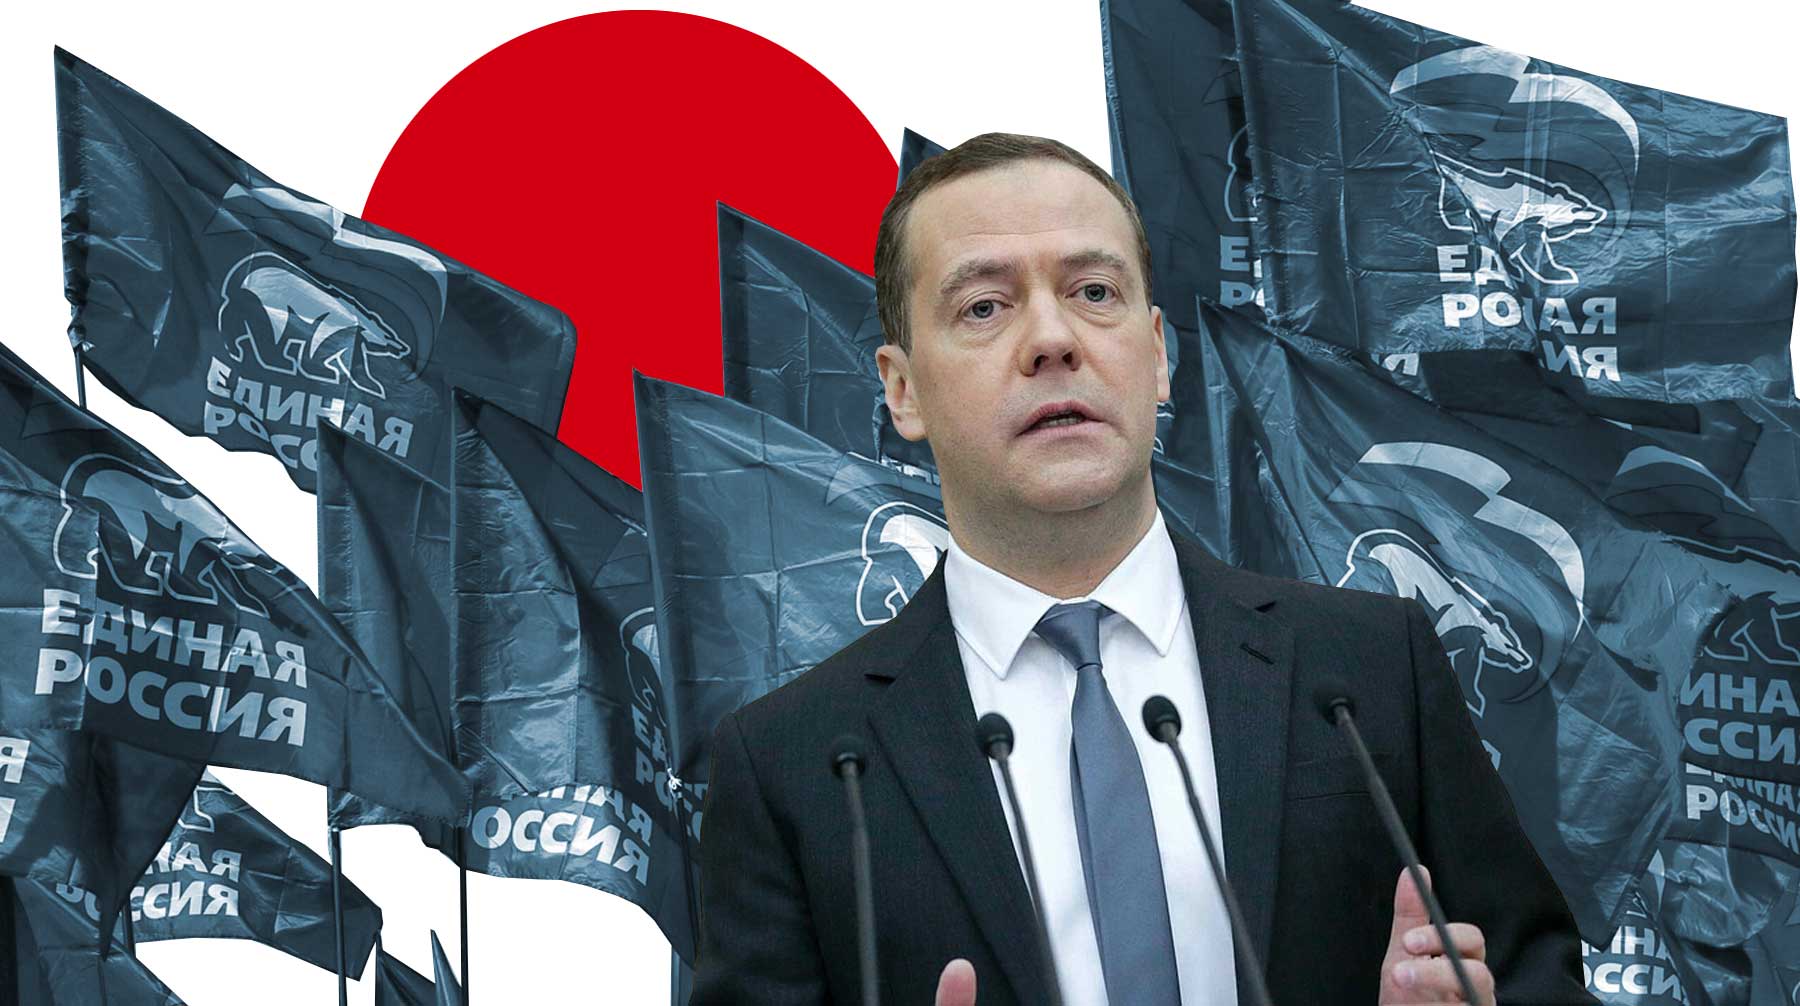 Дмитрий Медведев требует от единороссов близости к народу, рассказал Daily Storm источник в партии власти Коллаж: © Daily Storm